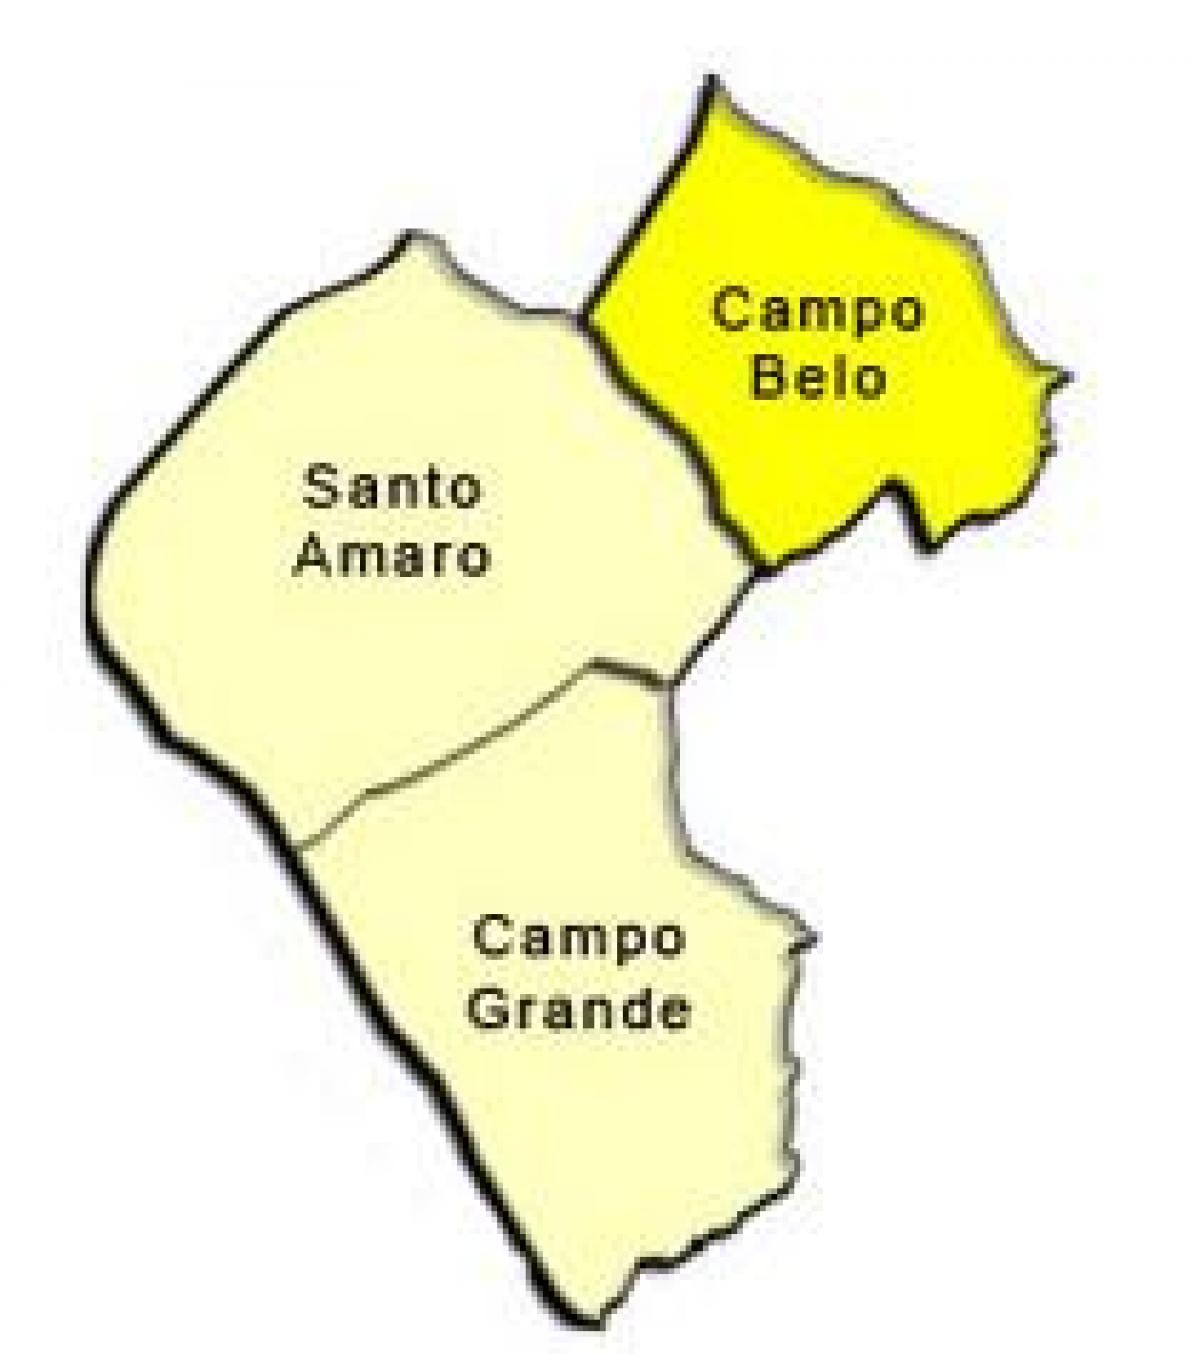 Peta dari Santo Amaro sub-prefektur